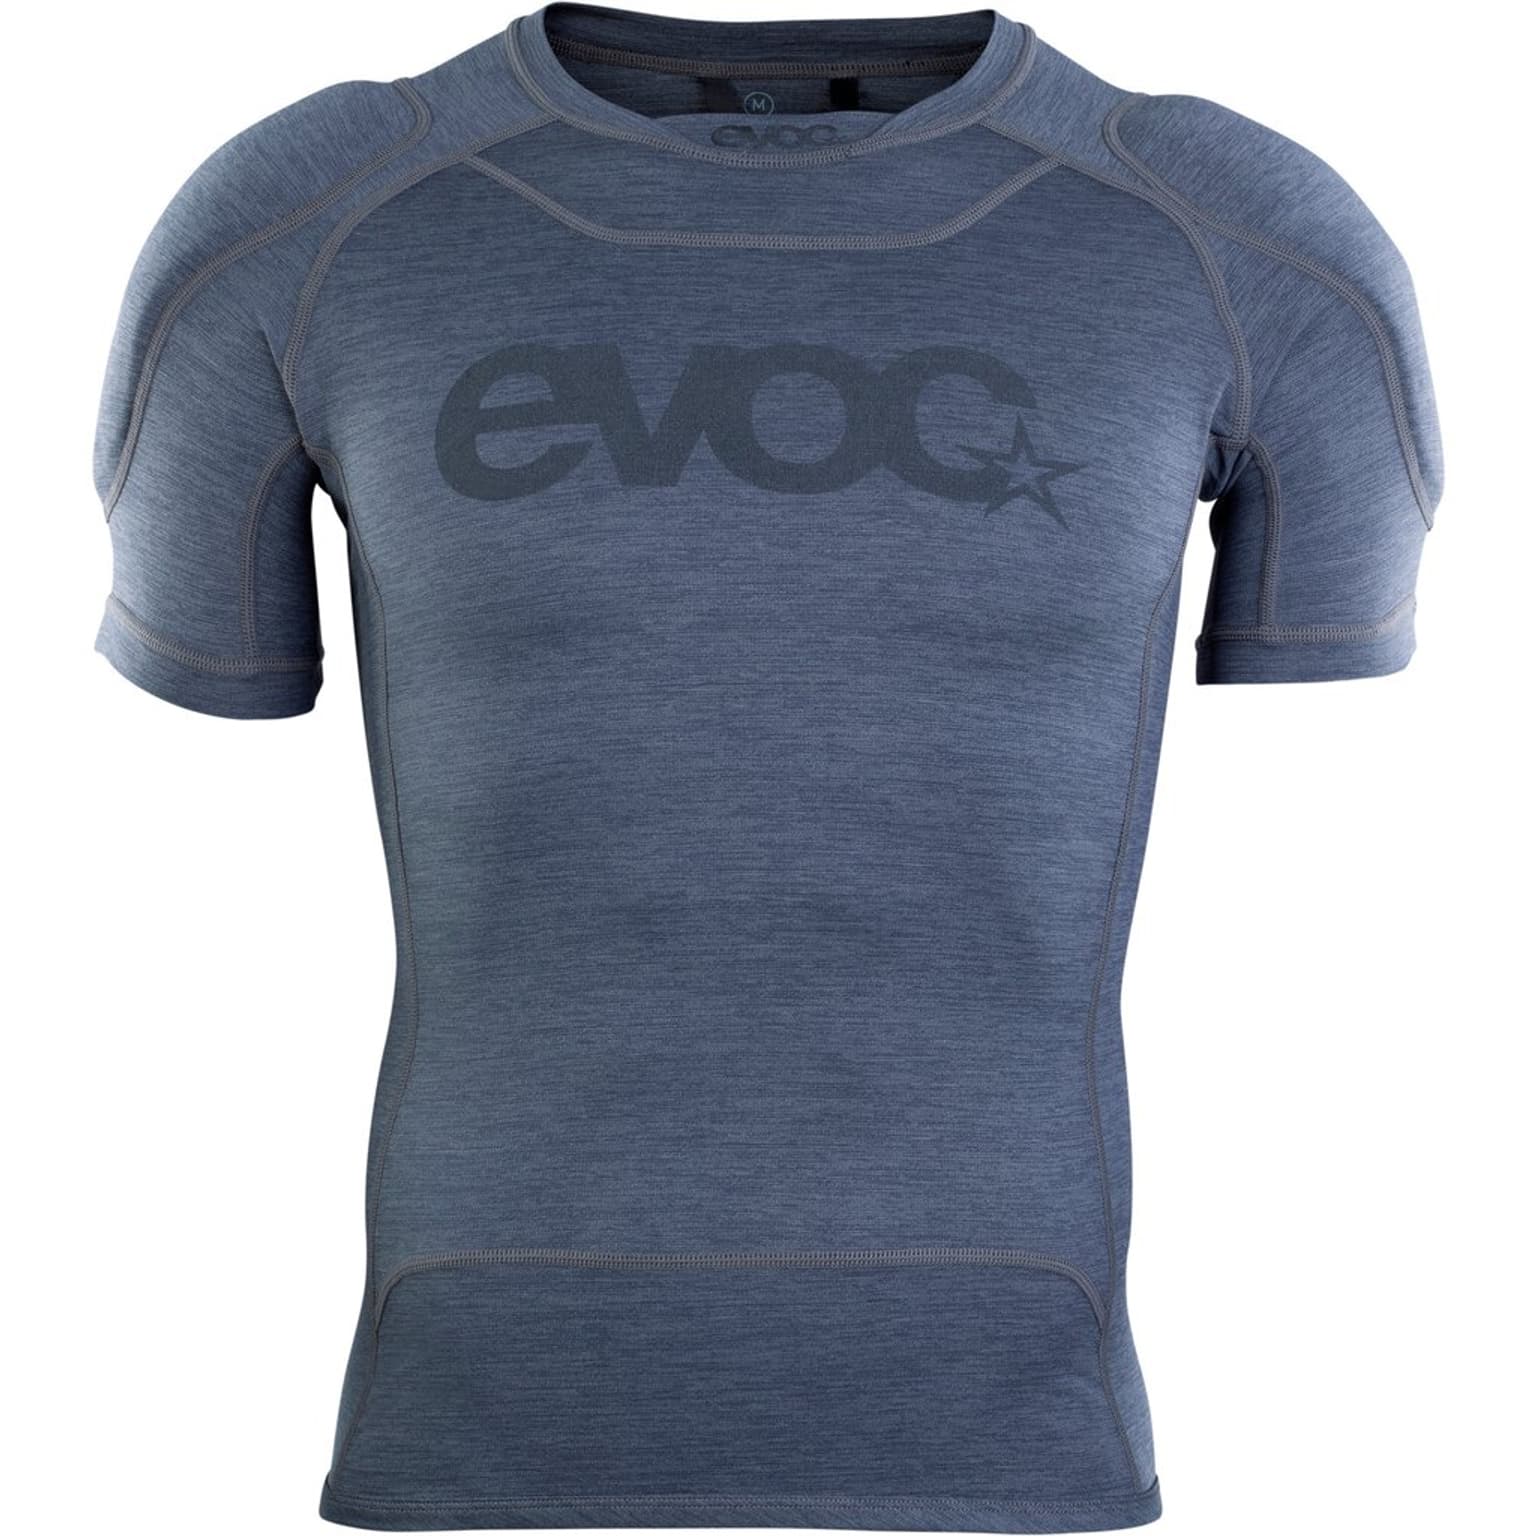 Evoc Evoc Enduro Shirt Protektoren gris-fonce 1